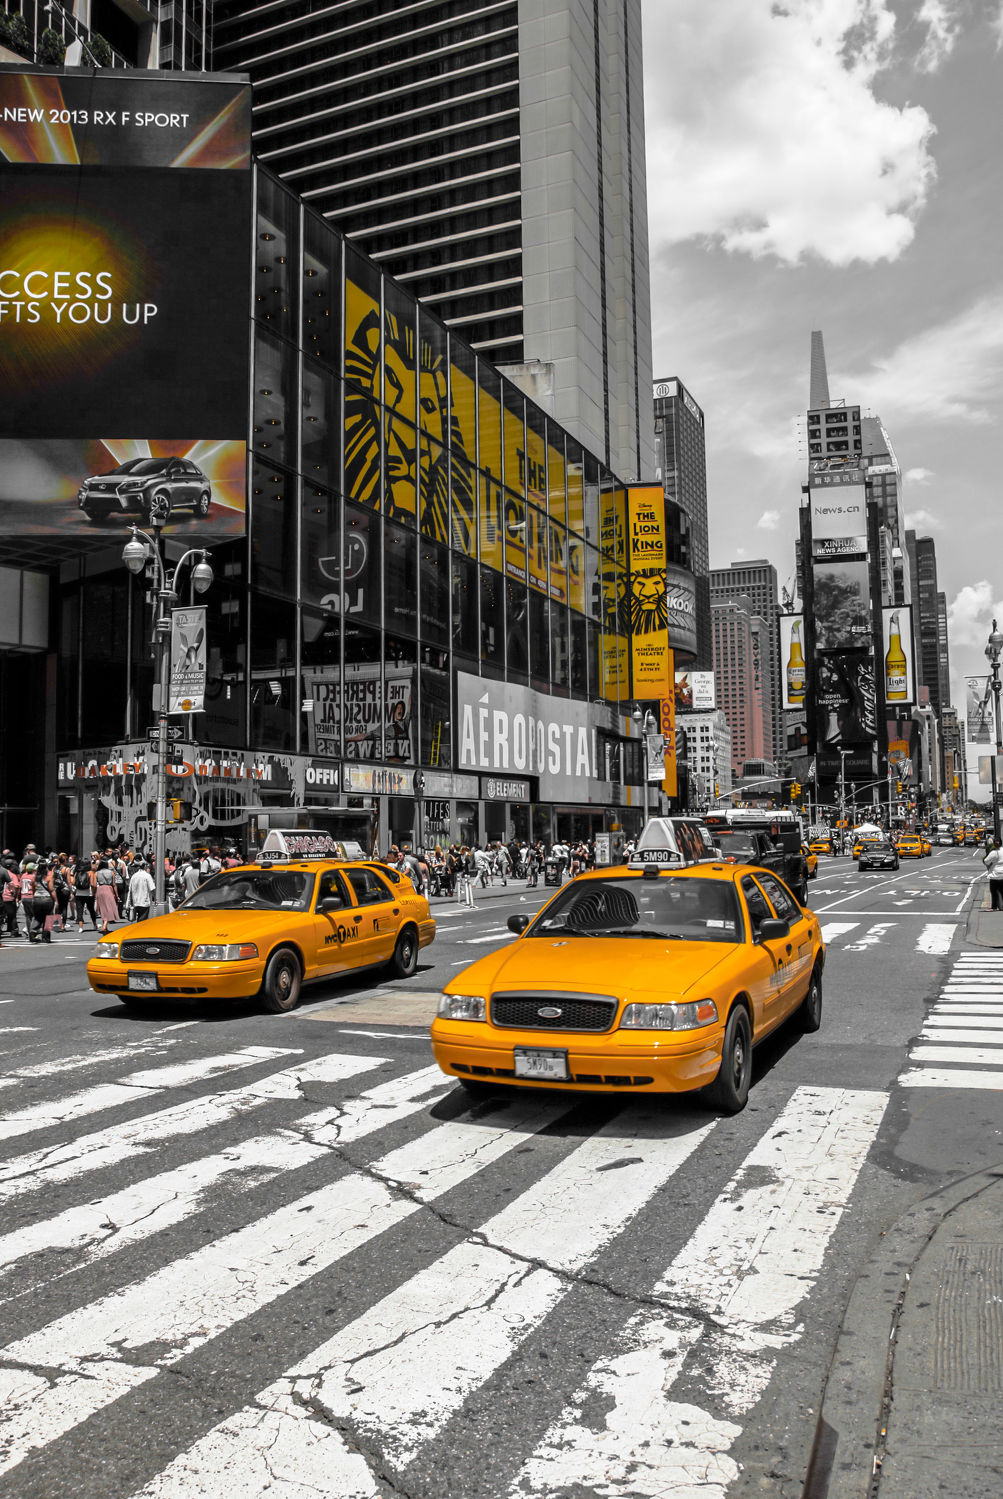 Bild mit New York, Colorkey, Verkehr, wolkenkratzer, Auto, Hochhäuser, taxi, Taxis, NYC, Manhatten, traffic, yellow cap